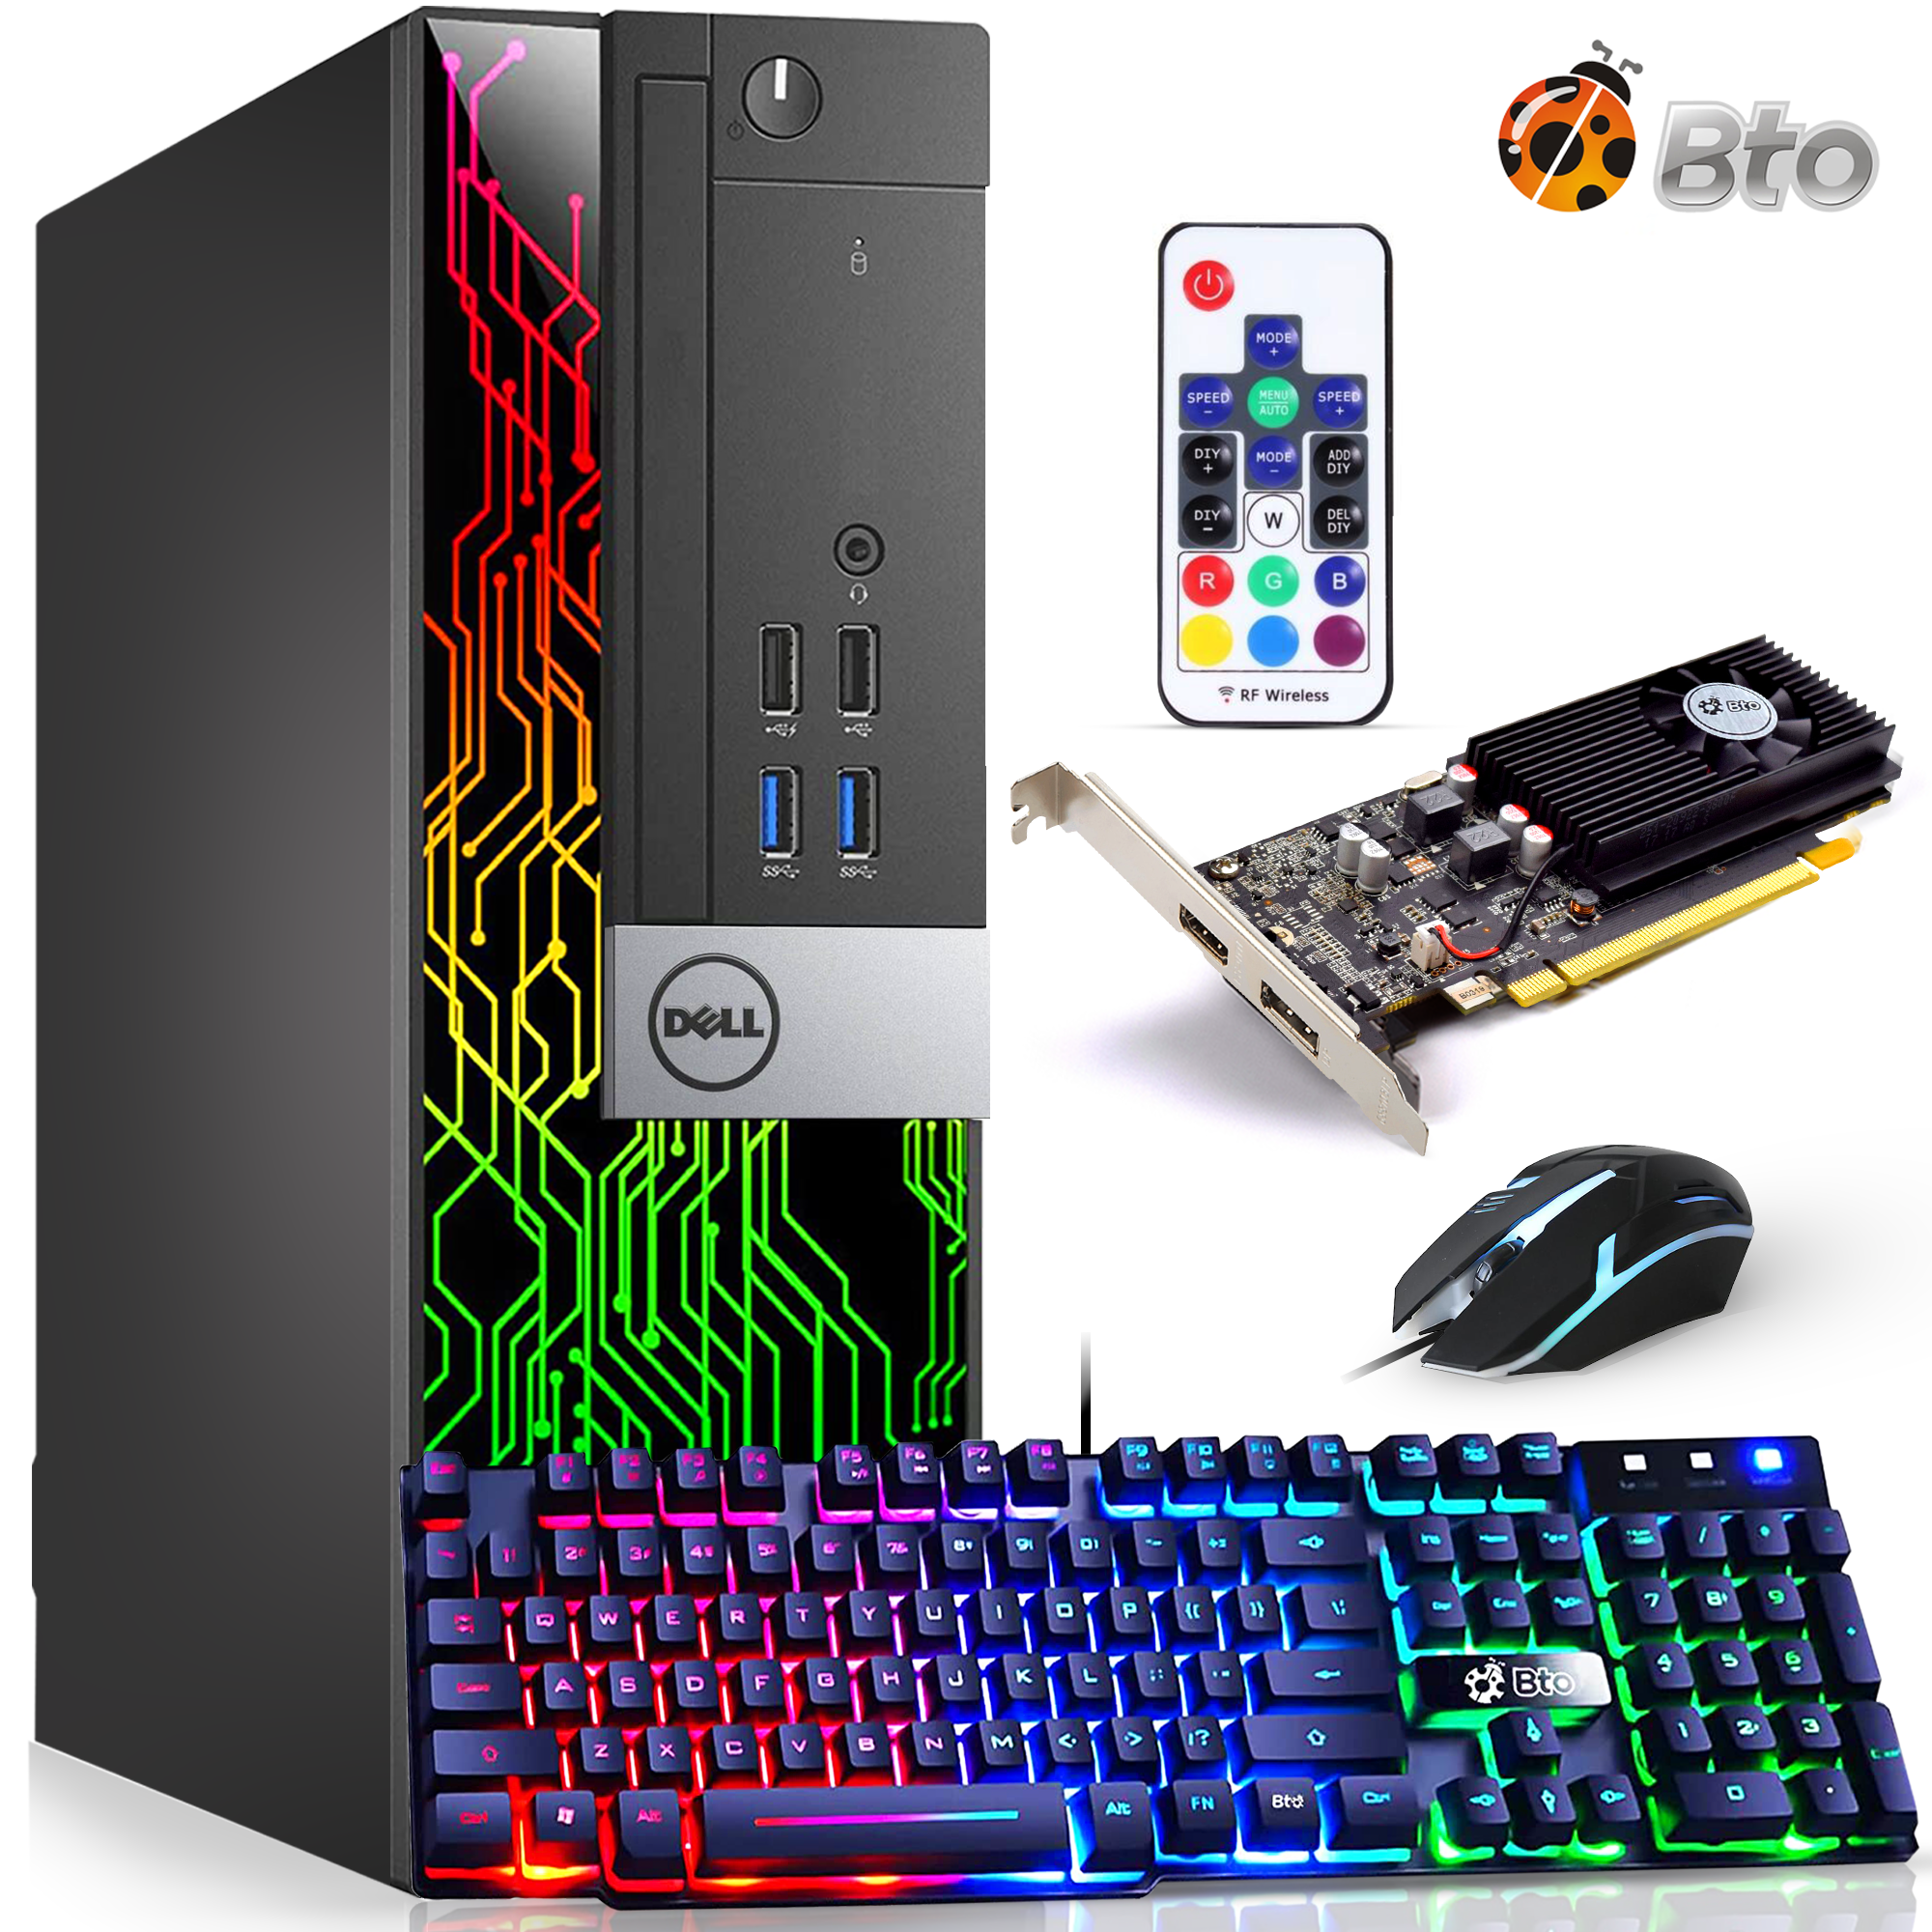 Q575G6 Mini PC Computer Intel Core i7 7500U Processor Winds 10 pro Linux  Gaming PC 4K Desktop pc 8G RAM 32G SSD